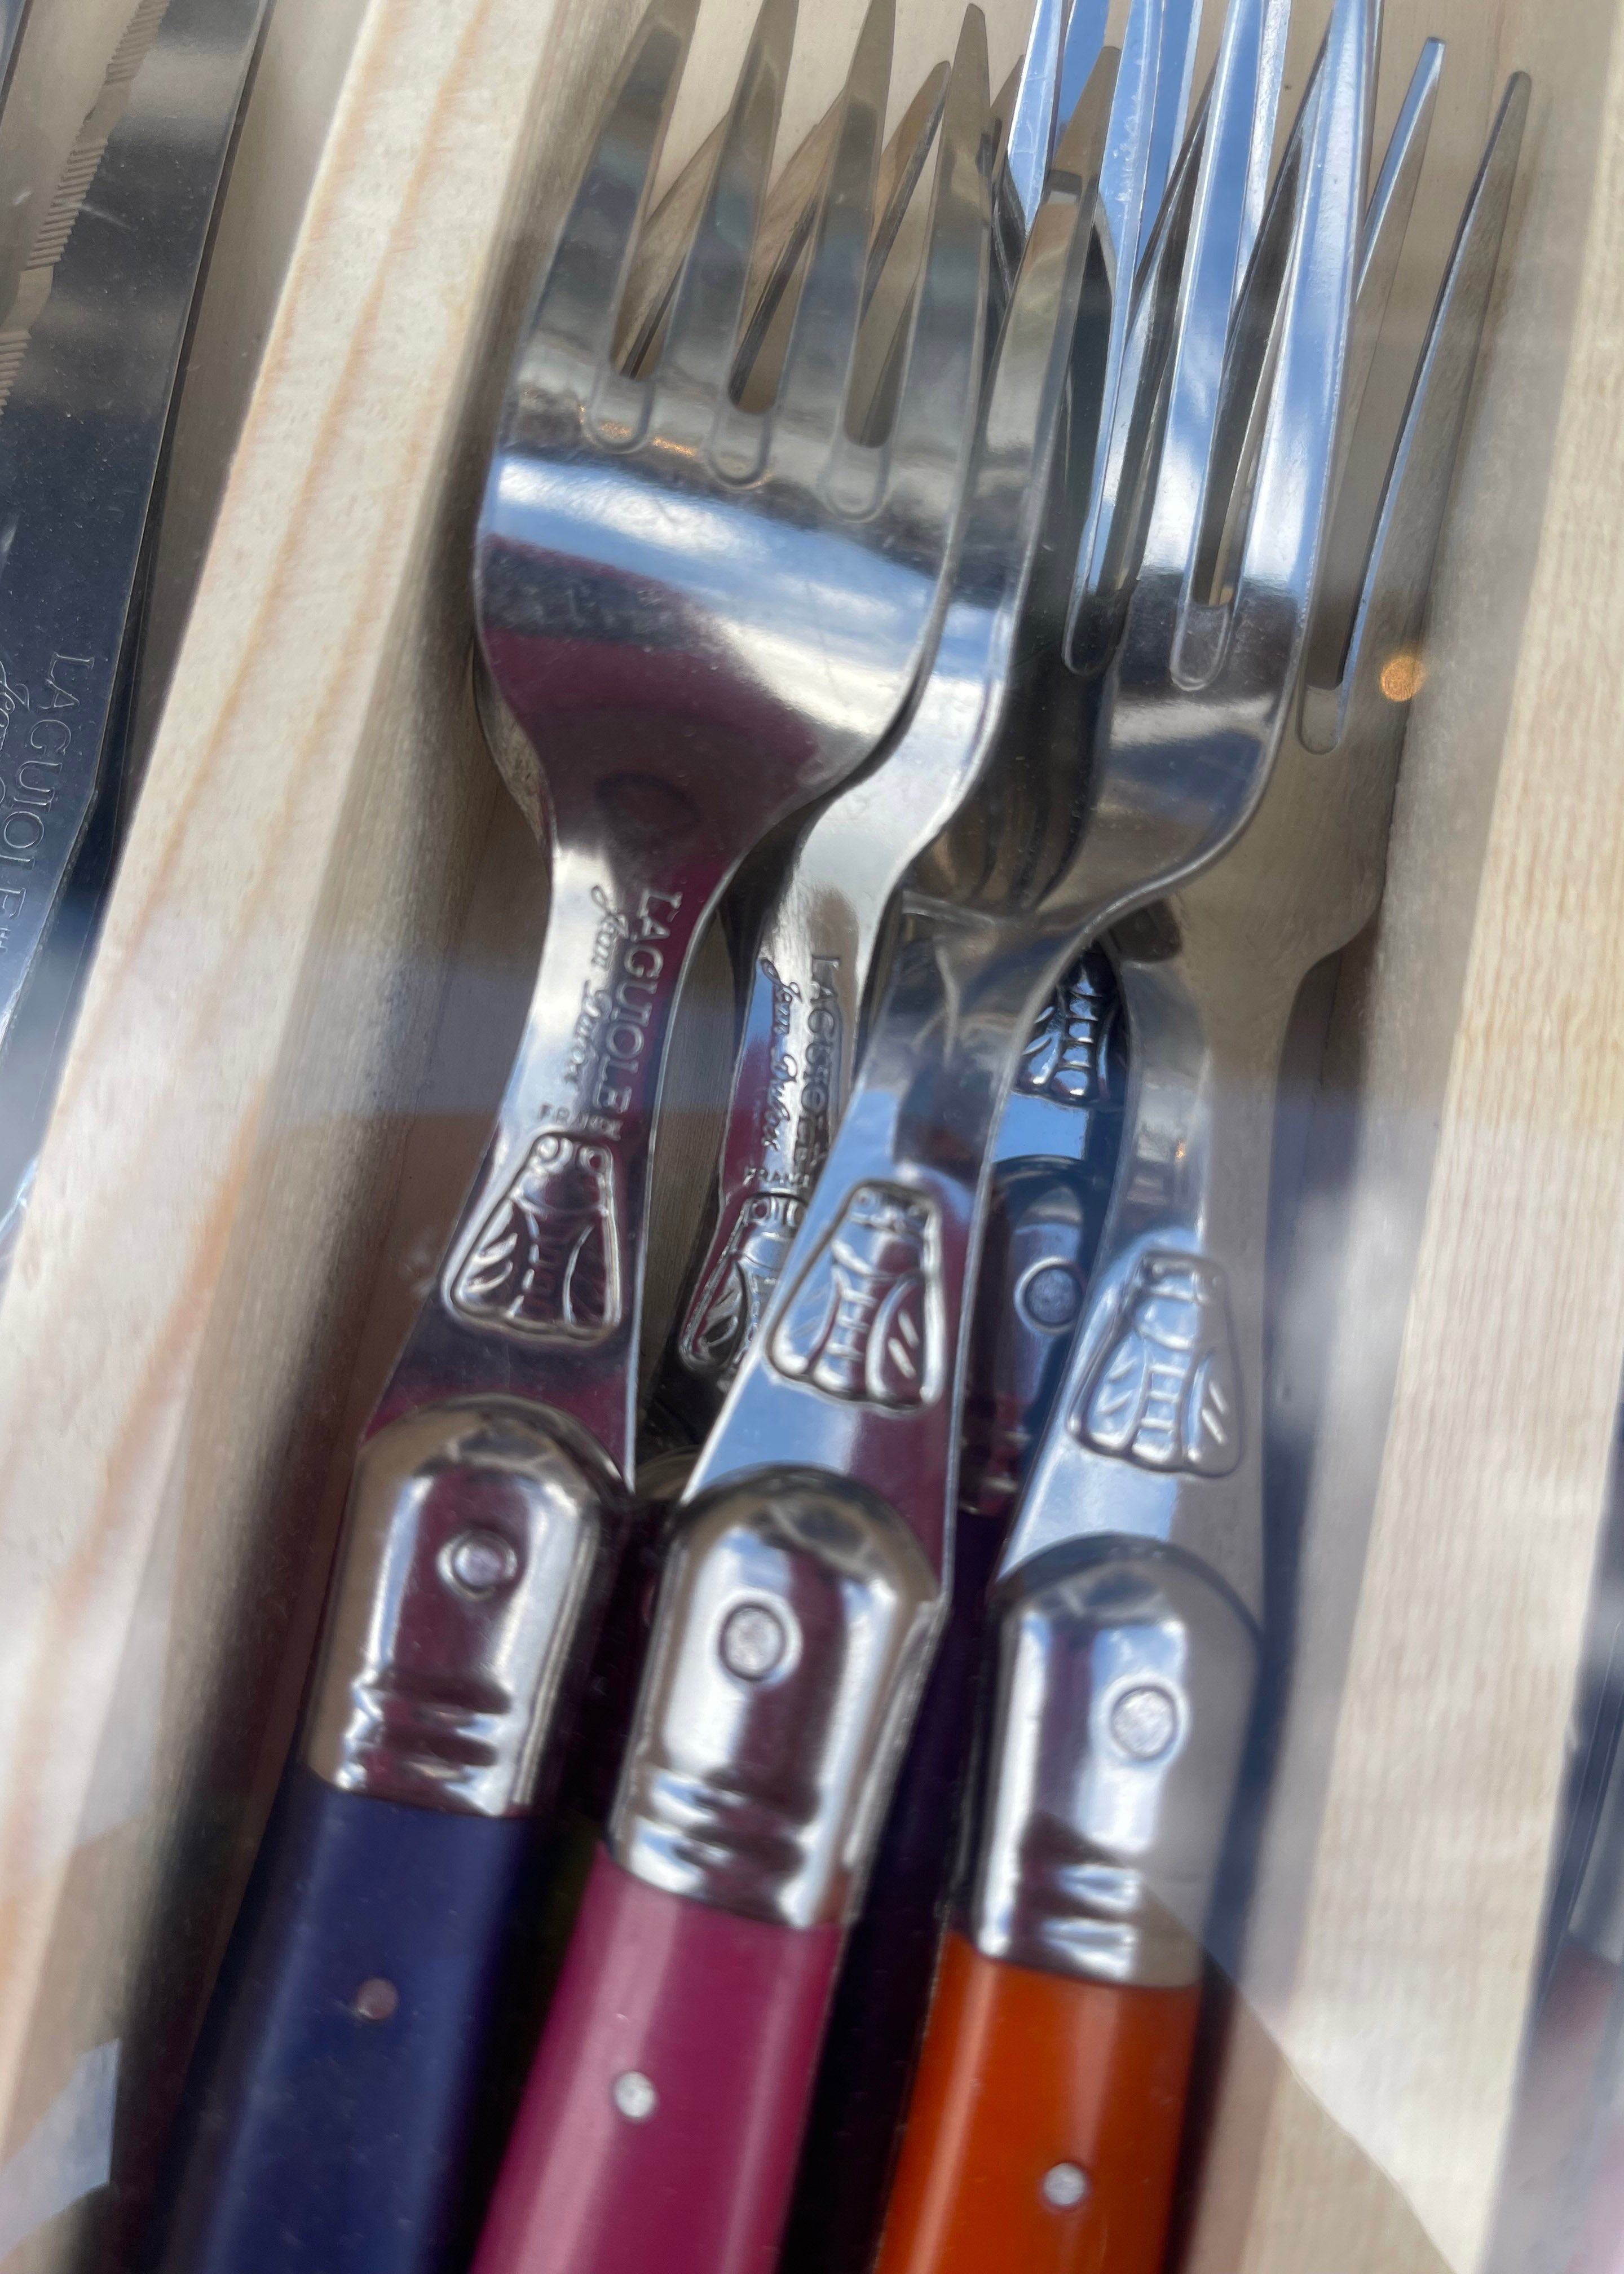 Laguiole 24 Piece Cutlery Set - Multi-coloured